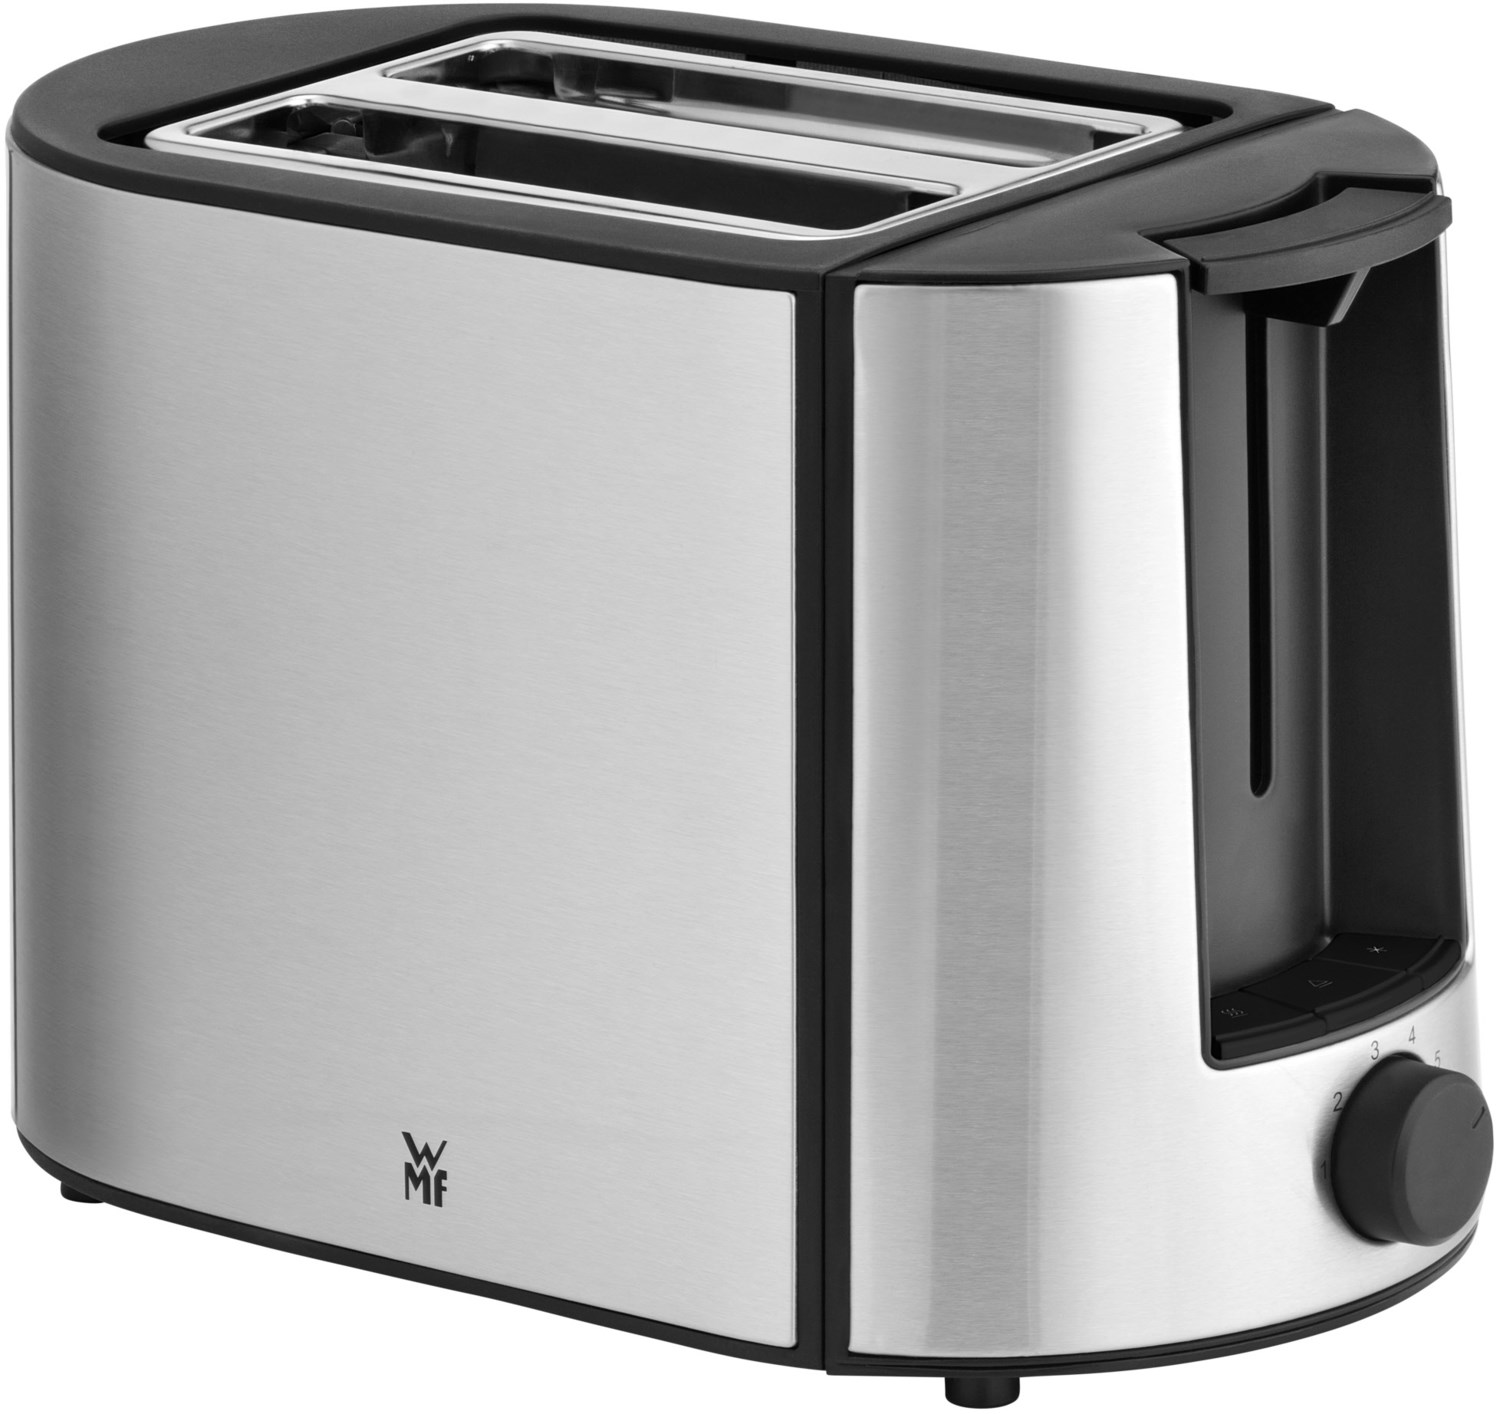 BUENO Pro Toaster cromargan matt von WMF